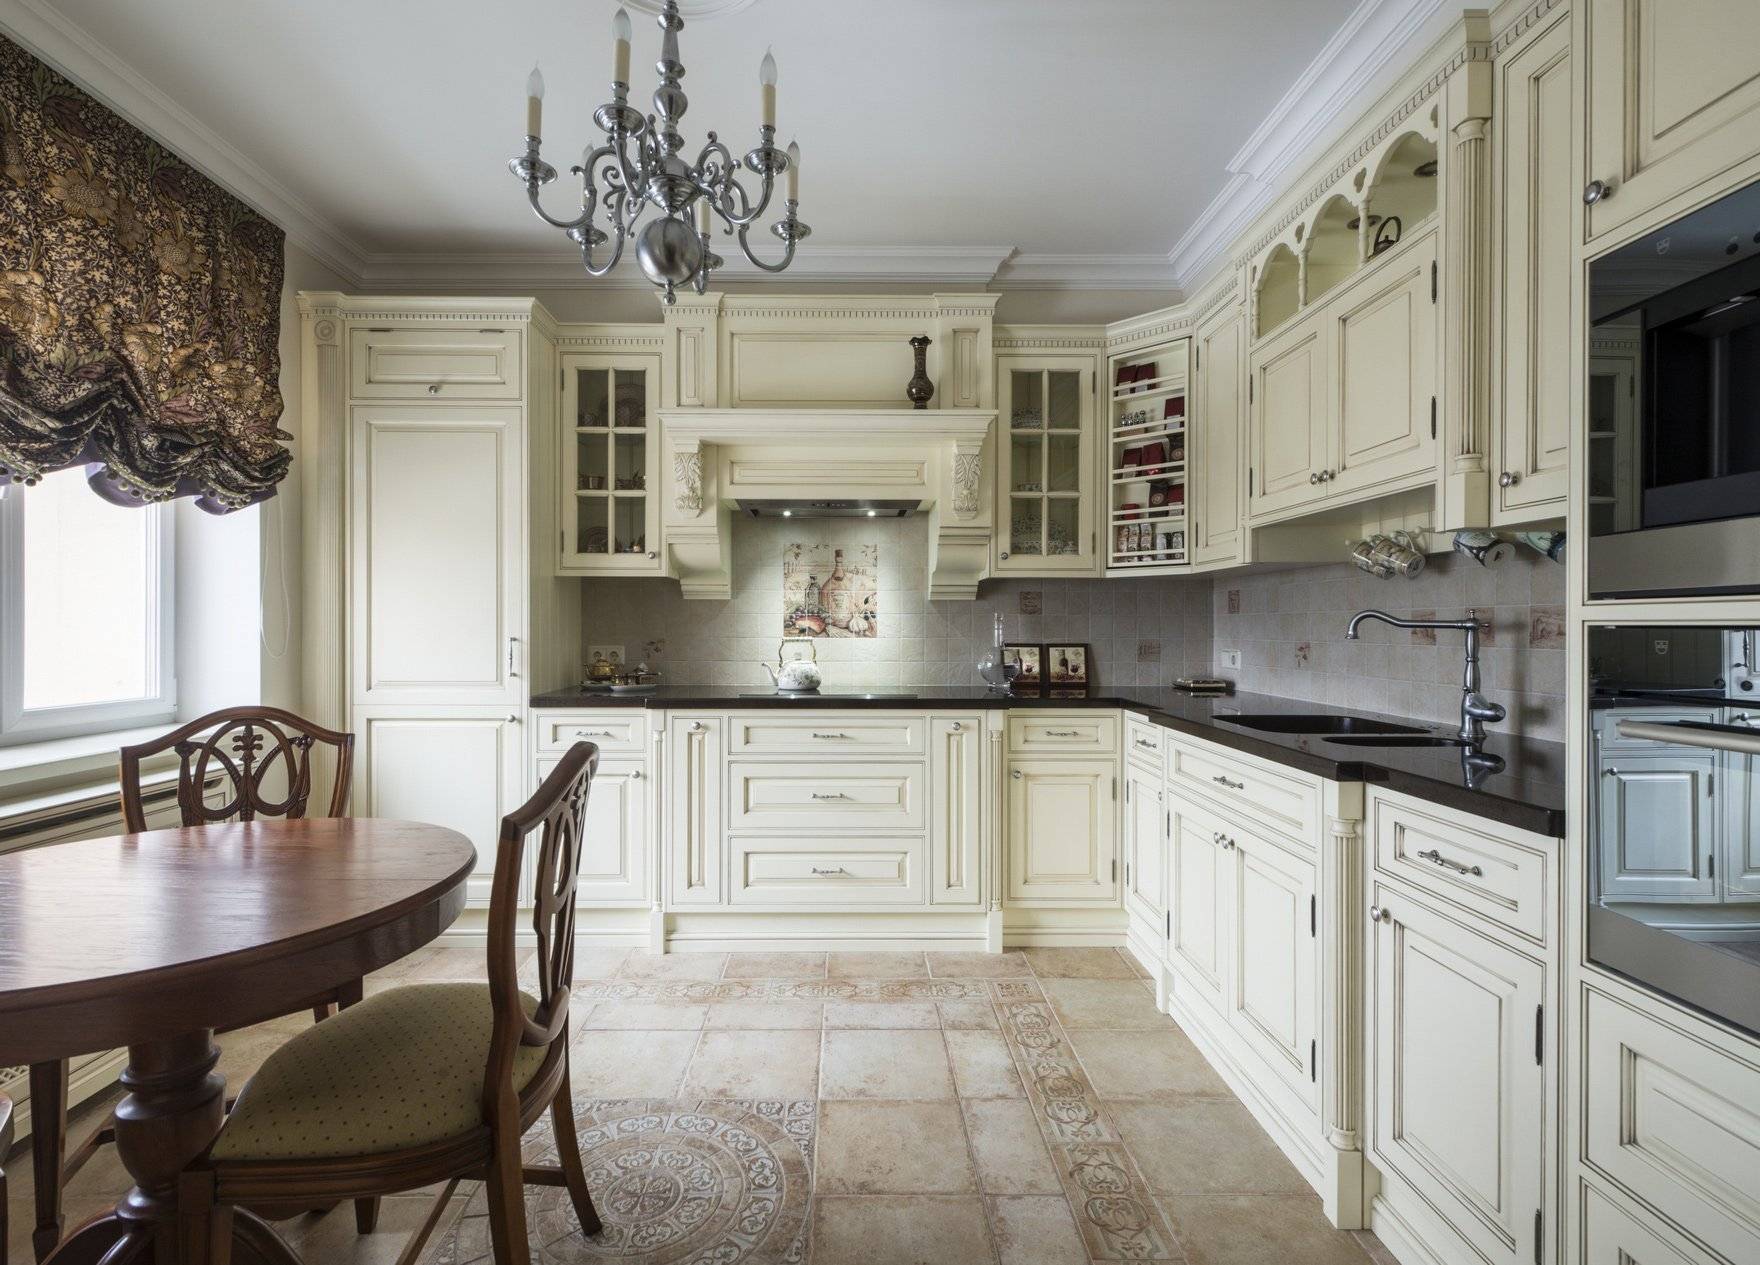 Английский стиль в интерьере кухни, гостиной: дизайн с камином, современные шторы - 30 фото